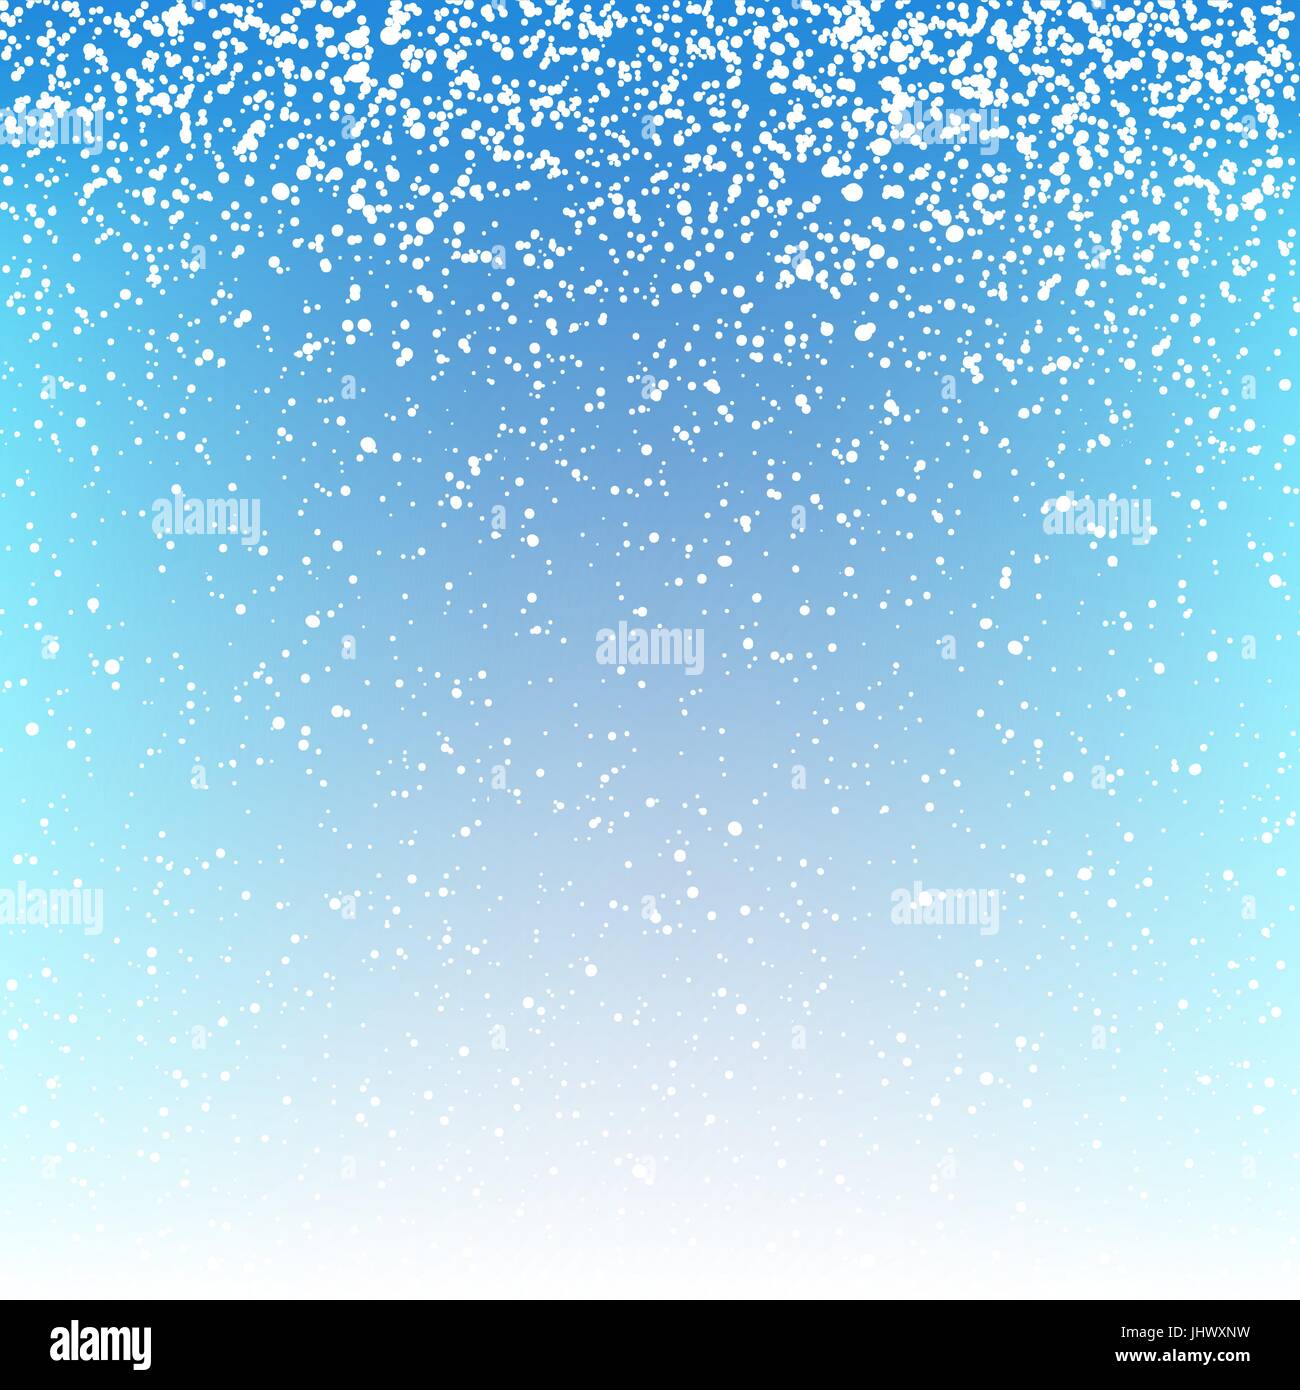 Weihnachten Schnee Hintergrund. Vektor-Illustration. Stock Vektor